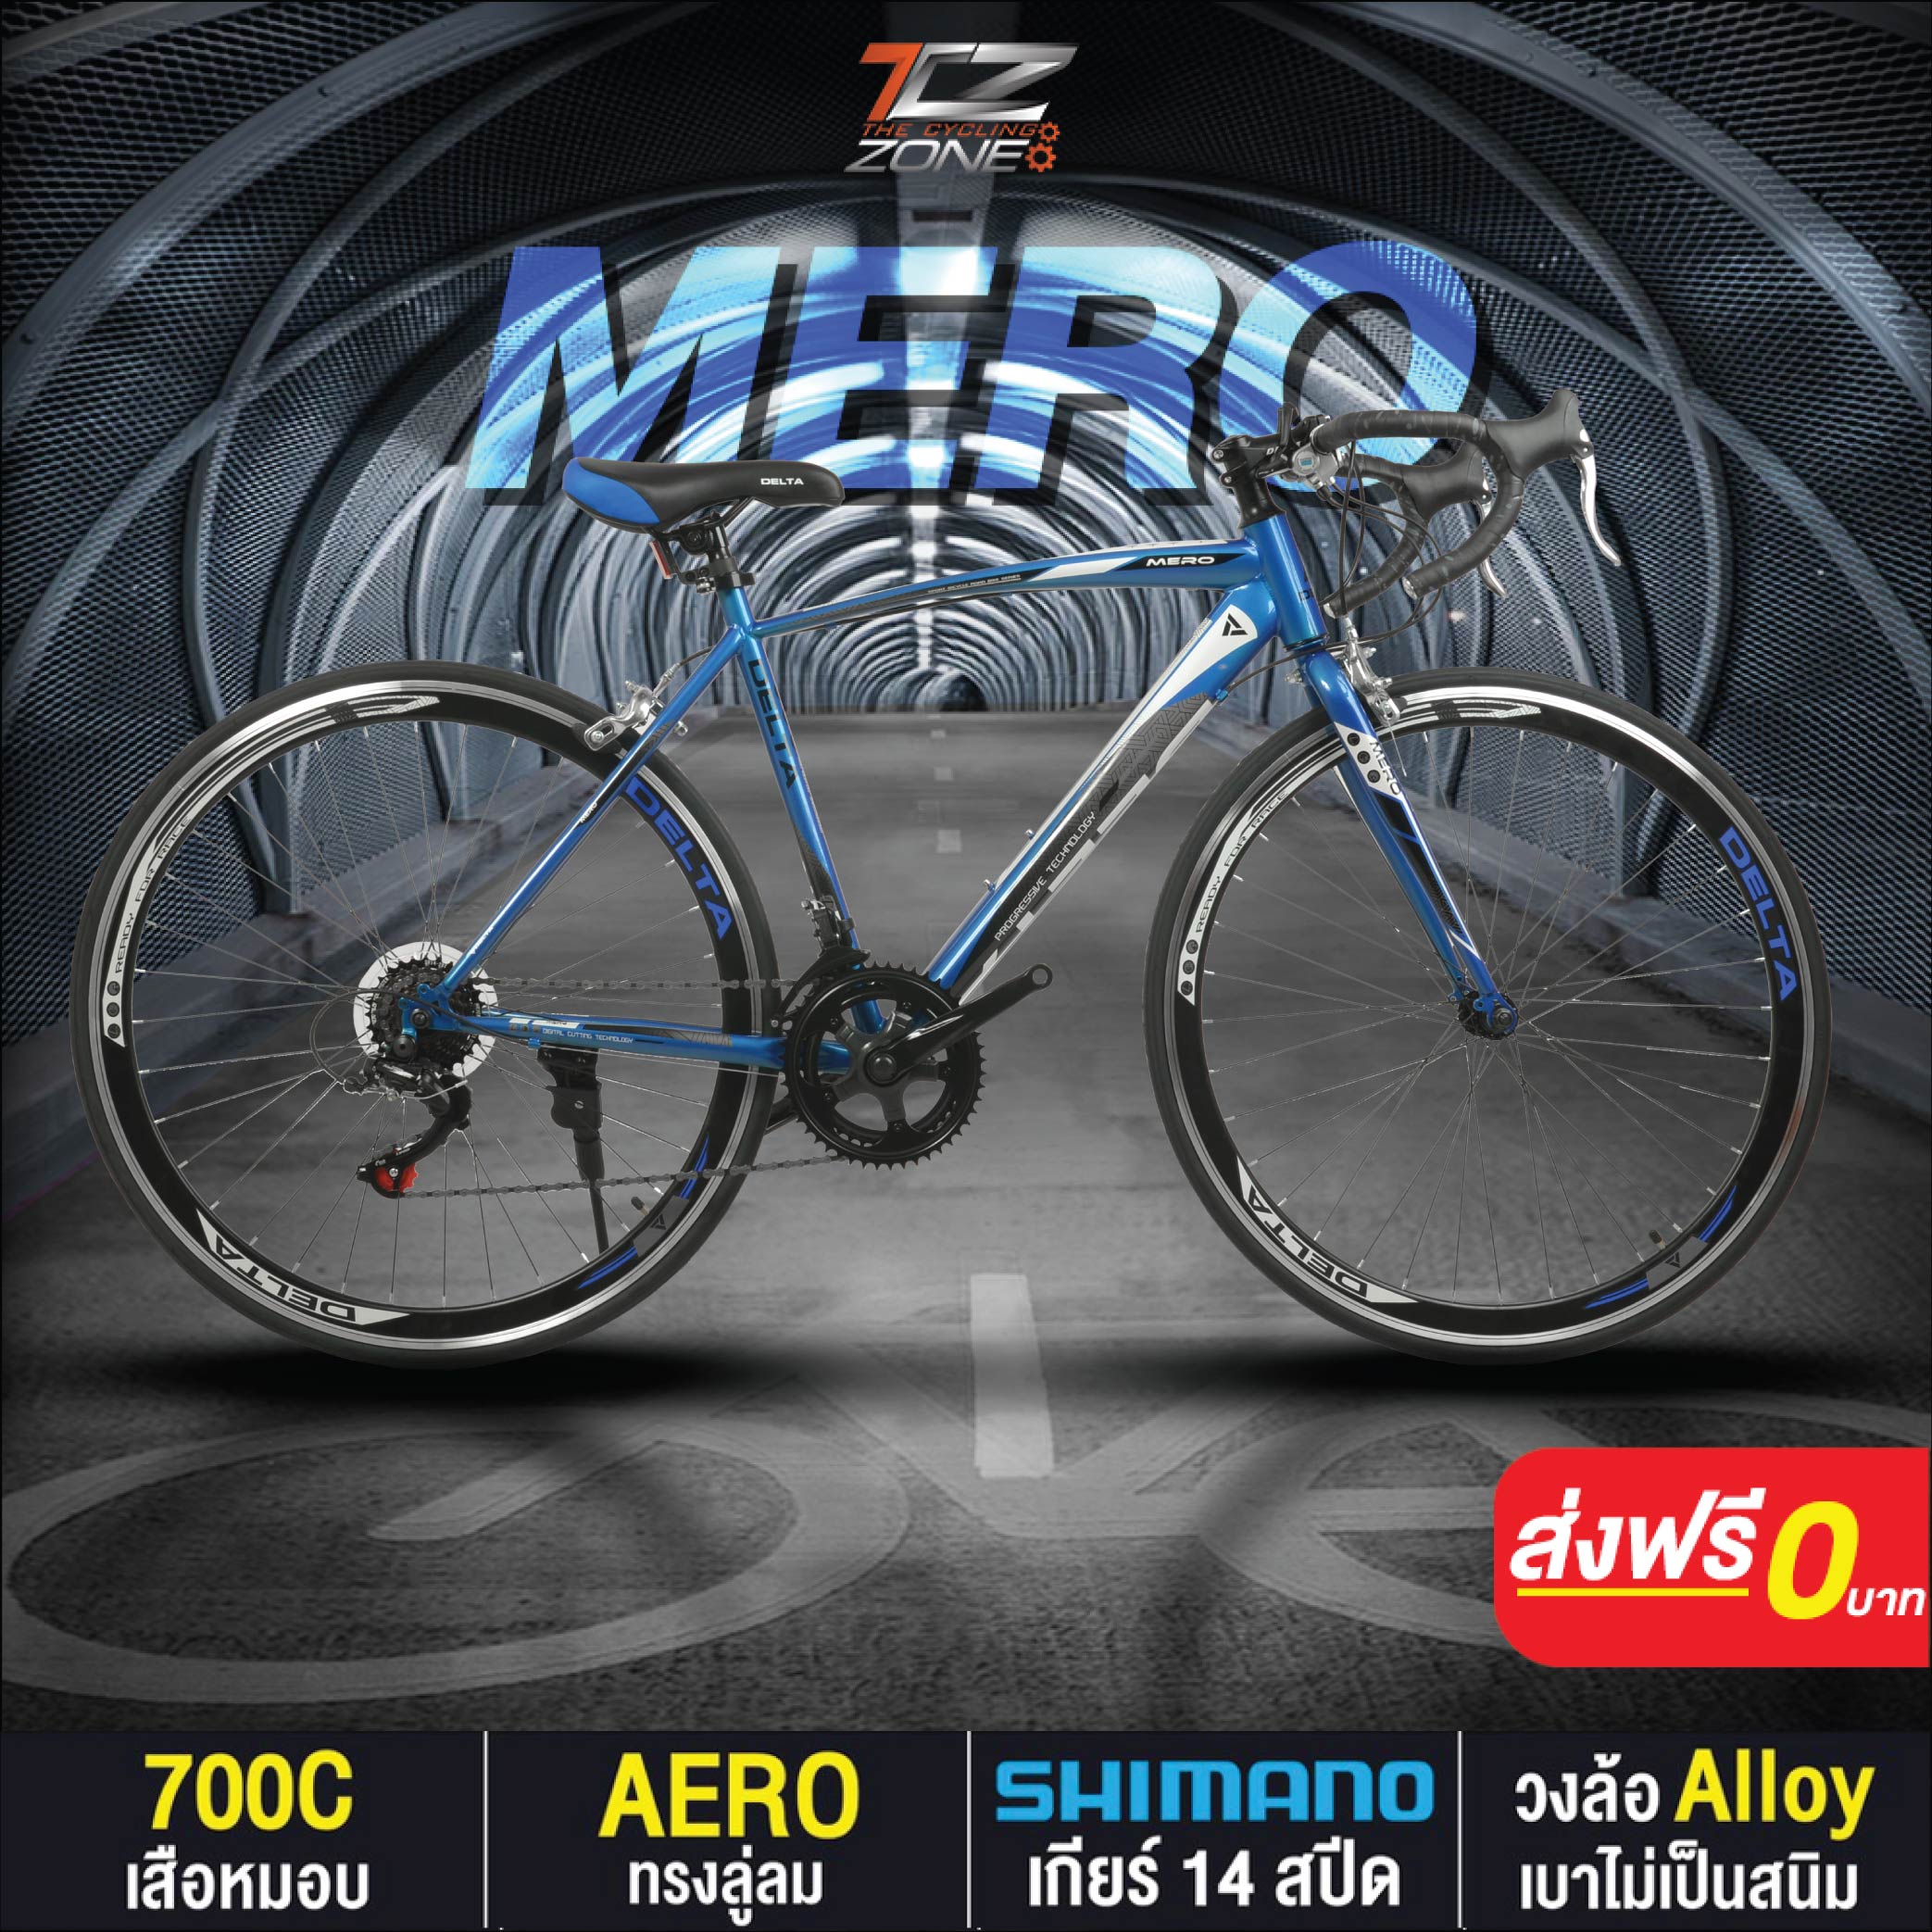 จักรยานเสือหมอบ 700C / DELTA เกียร์ SHIMANO 14 สปีด / ไซส์ 49 / รุ่น MERO สีฟ้า